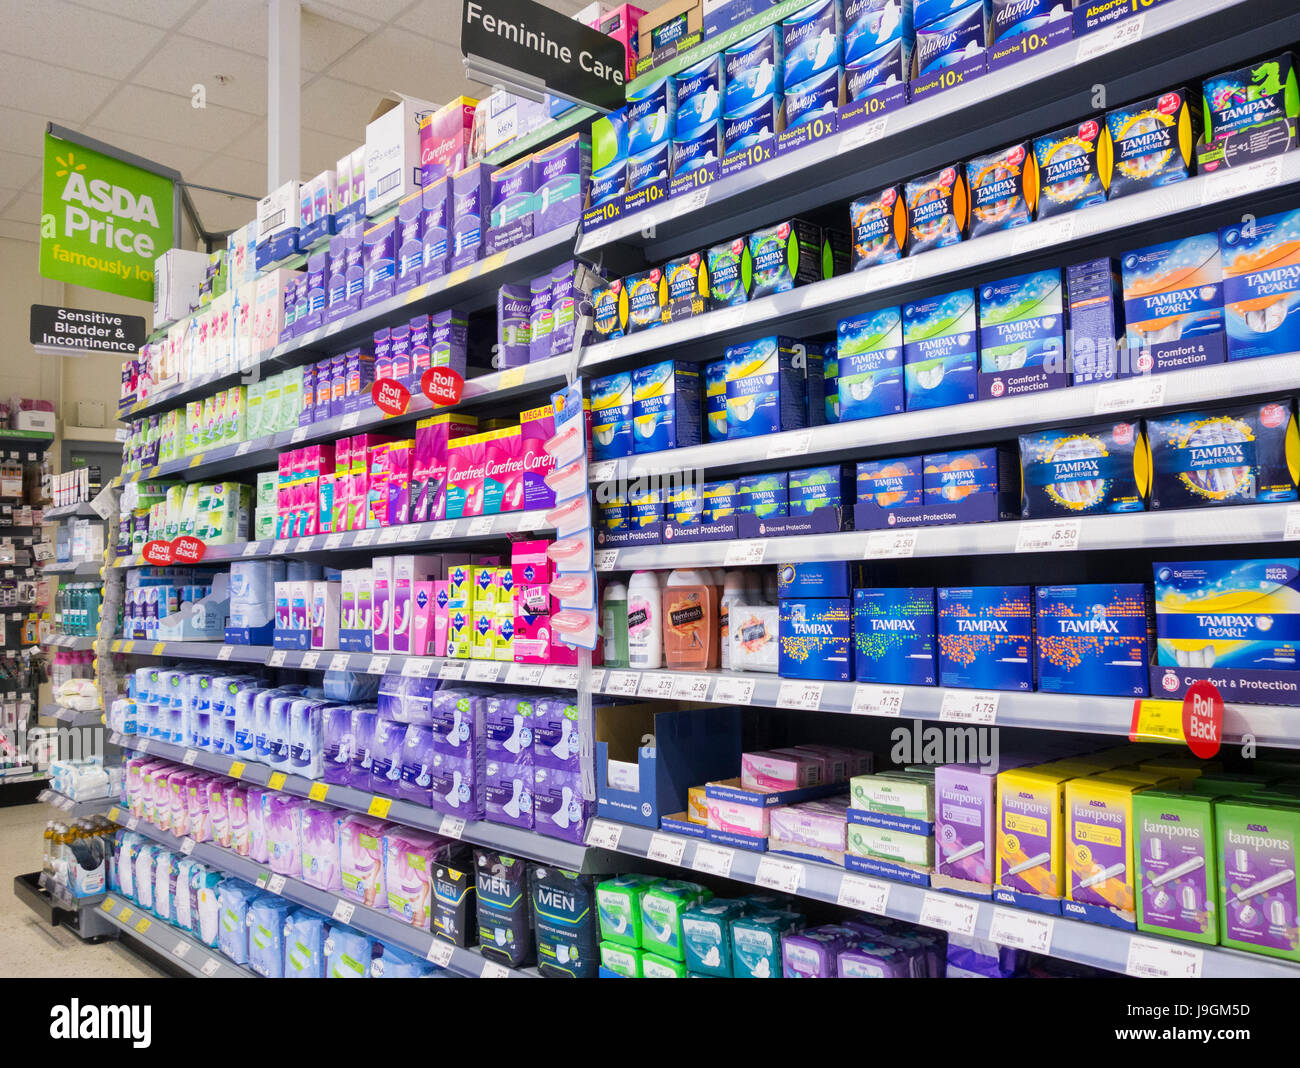 Supermercato dispaly di Tampax, tamponi, prodotti femminile. Regno Unito Foto Stock